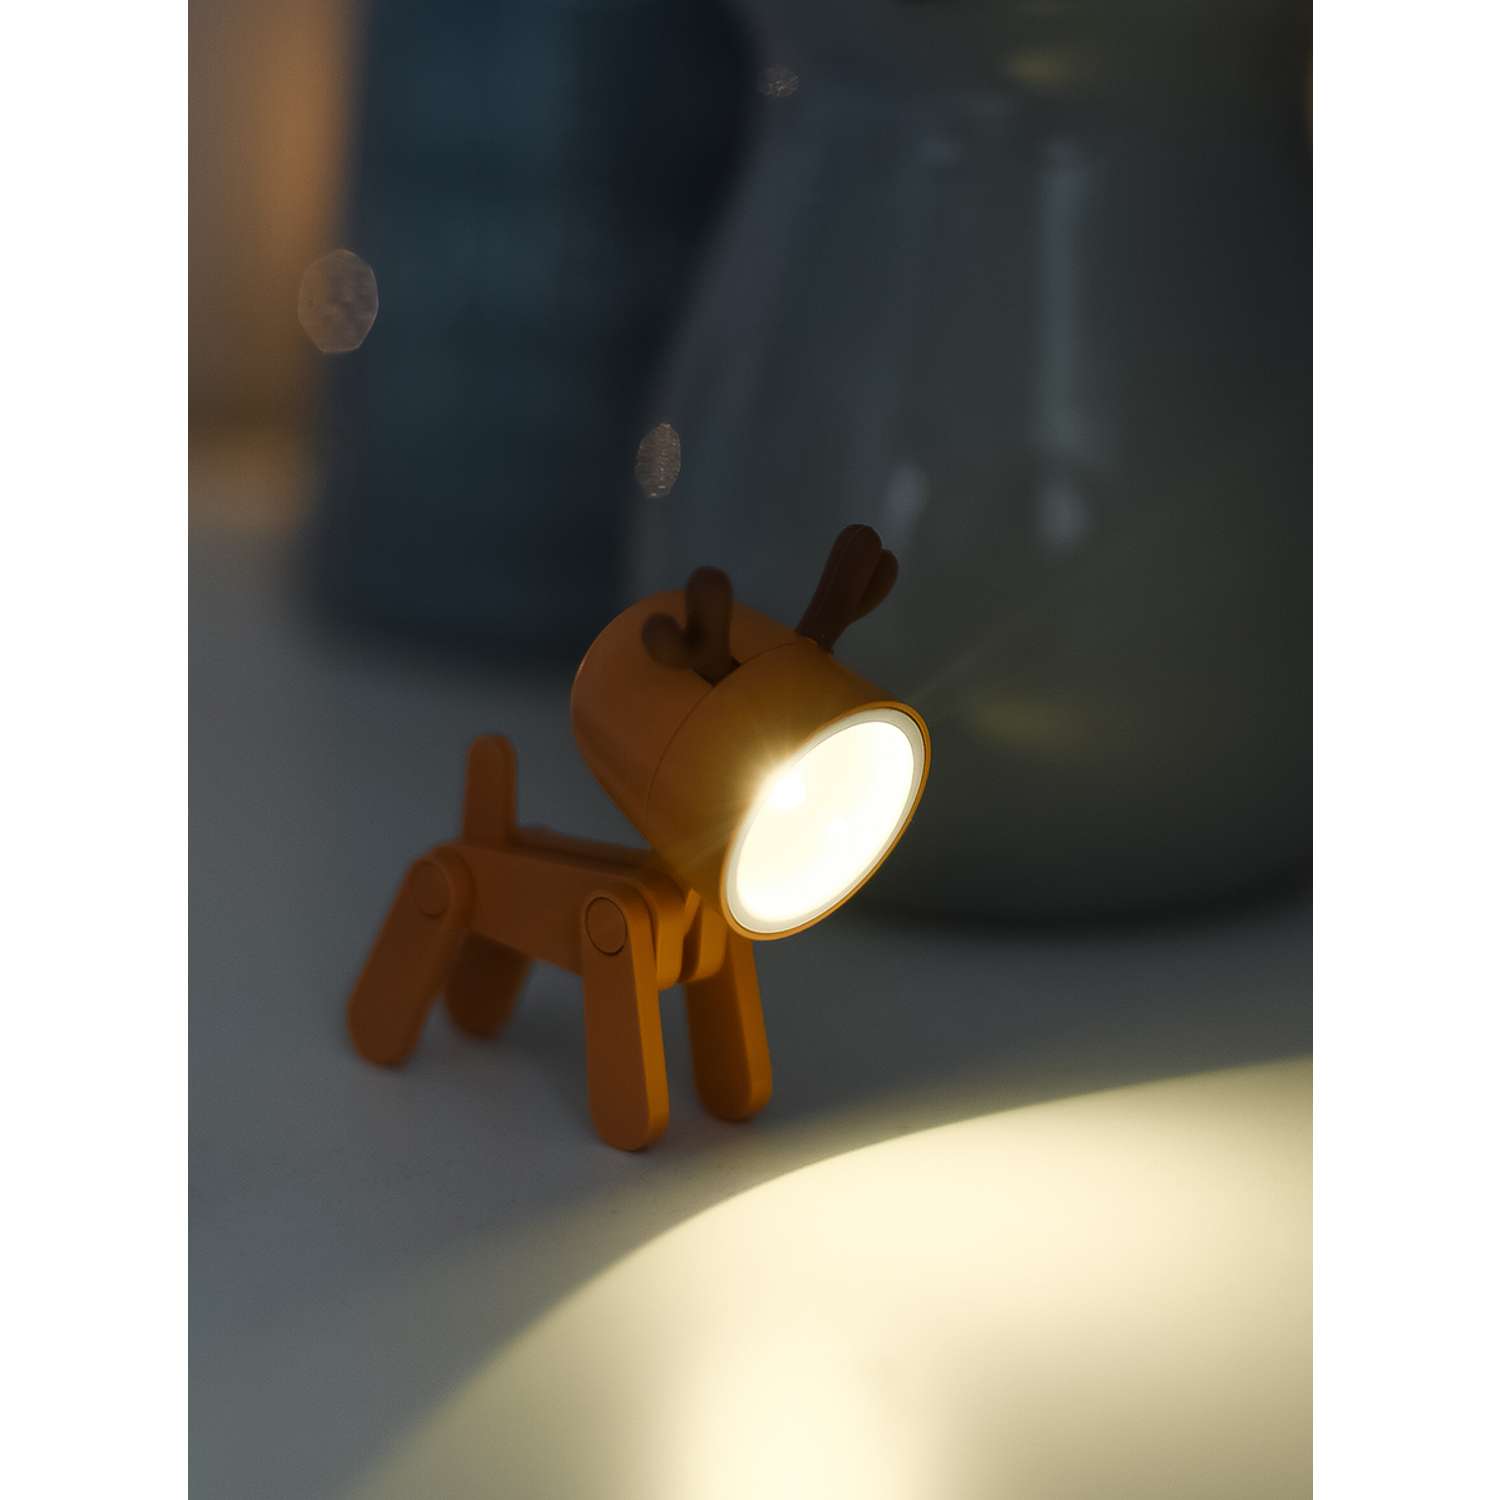 Светильник ночник LATS игрушка робот олень на батарейках - фото 19